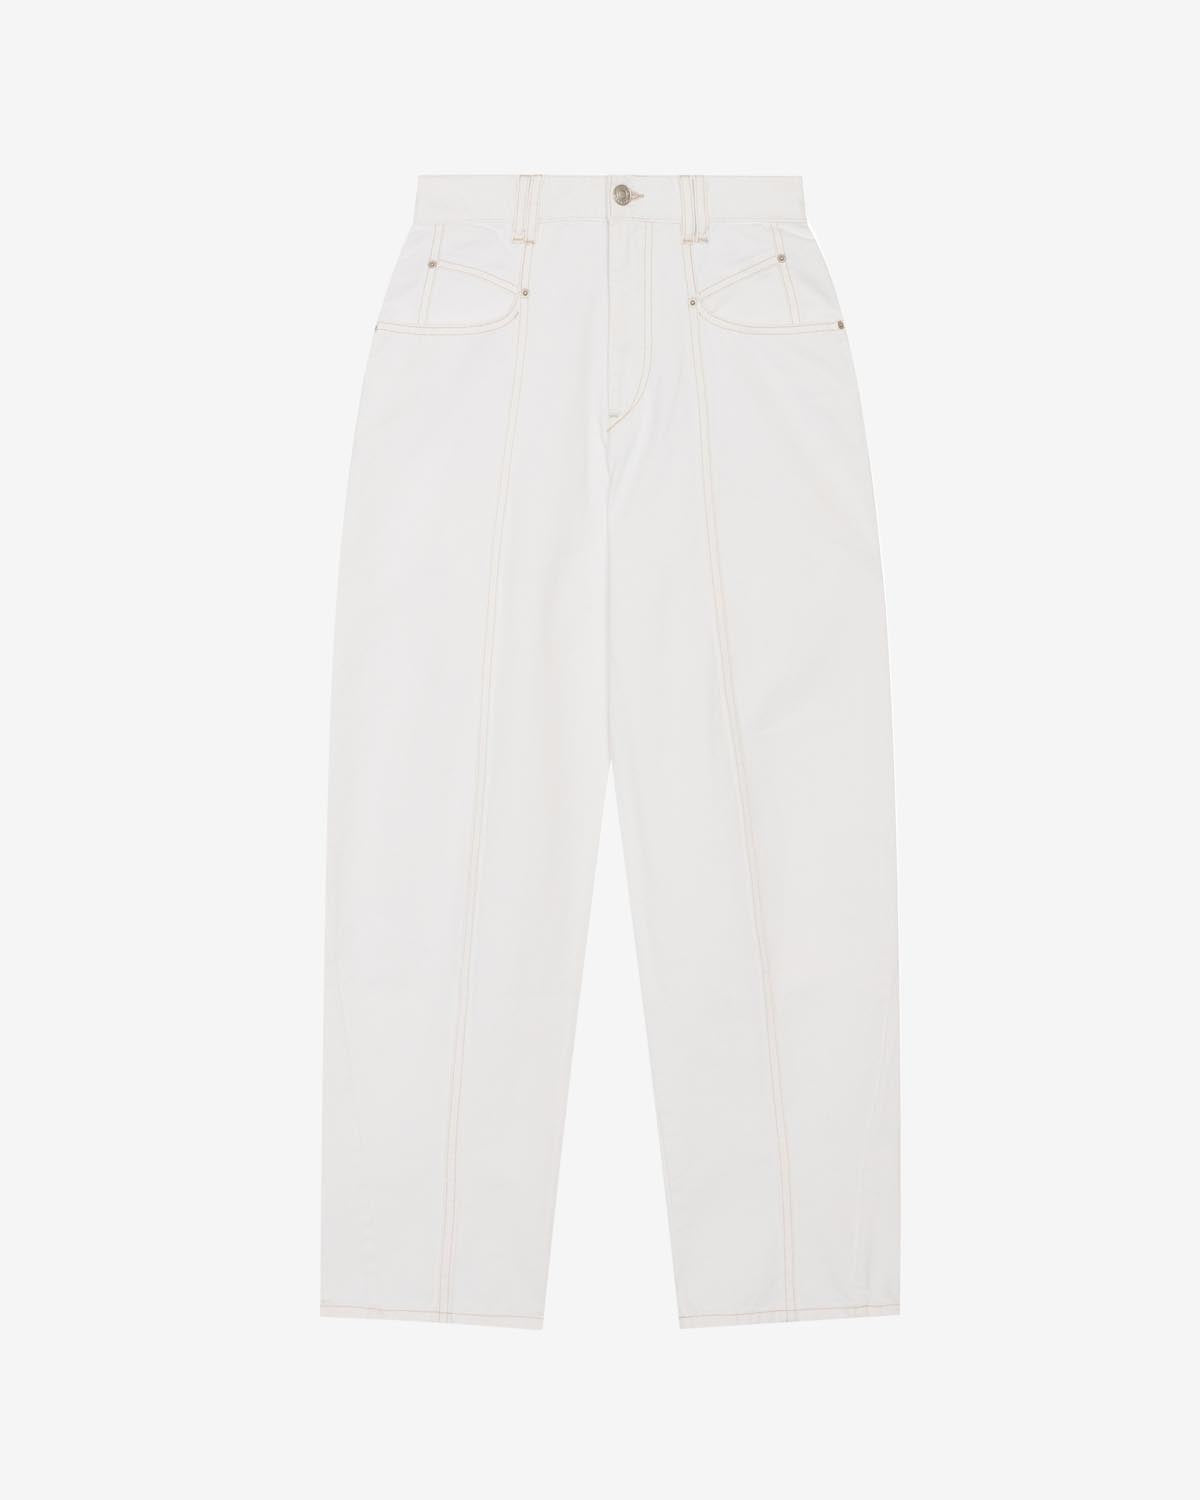 Vetan pantaloni Woman Bianco 2